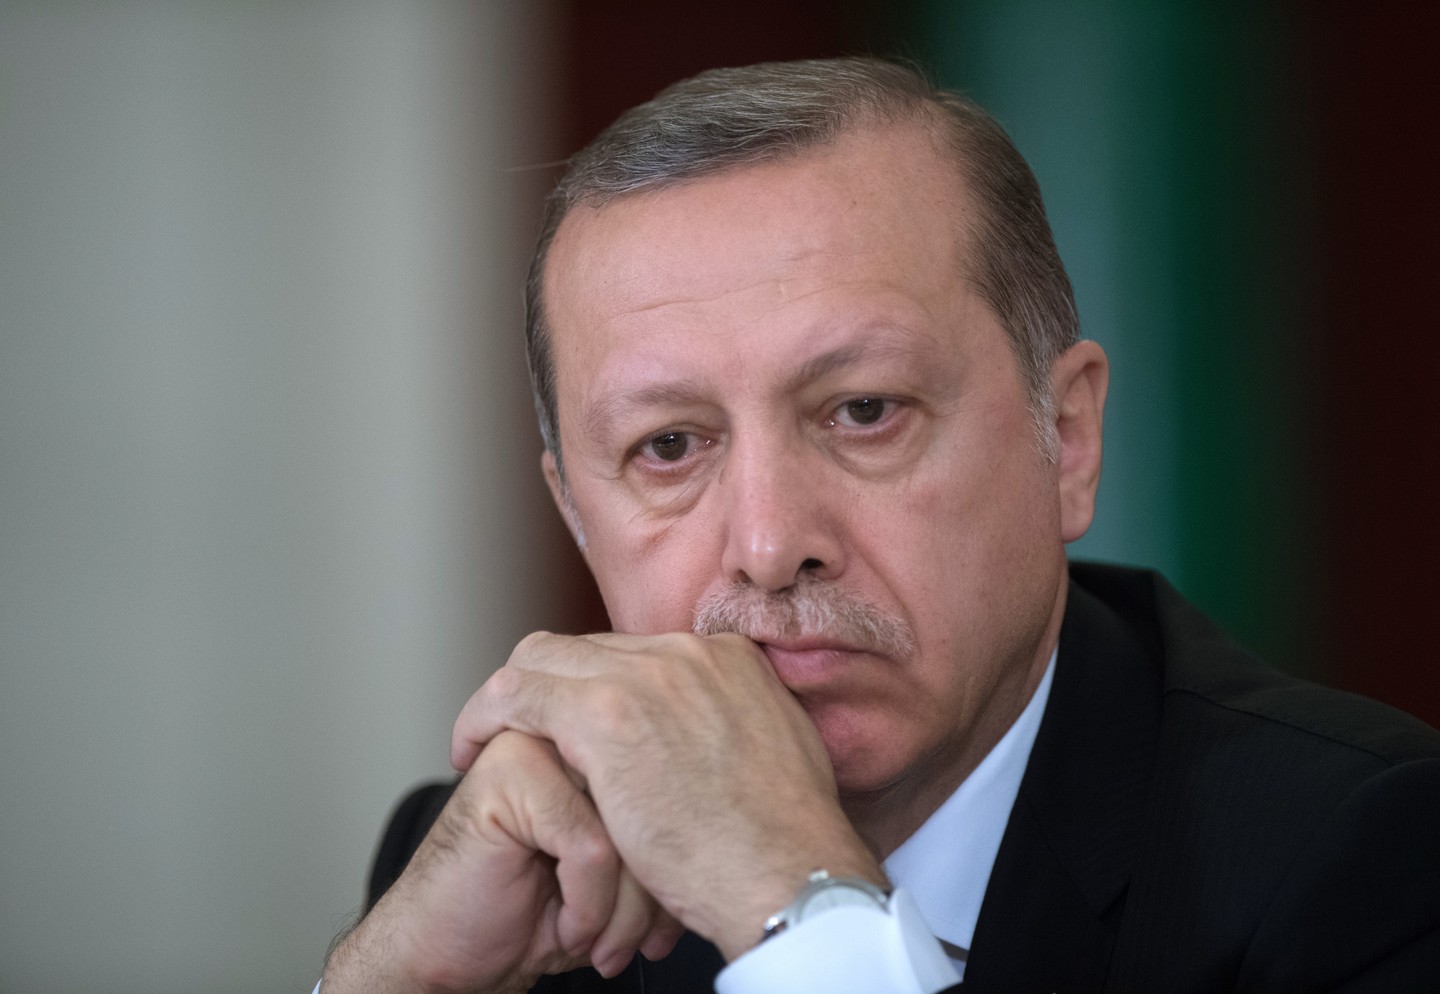 "Я не диктатор, я обычный смертный", - Эрдоган прокомментировал расширение своих полномочий после проведенного в Турции референдума